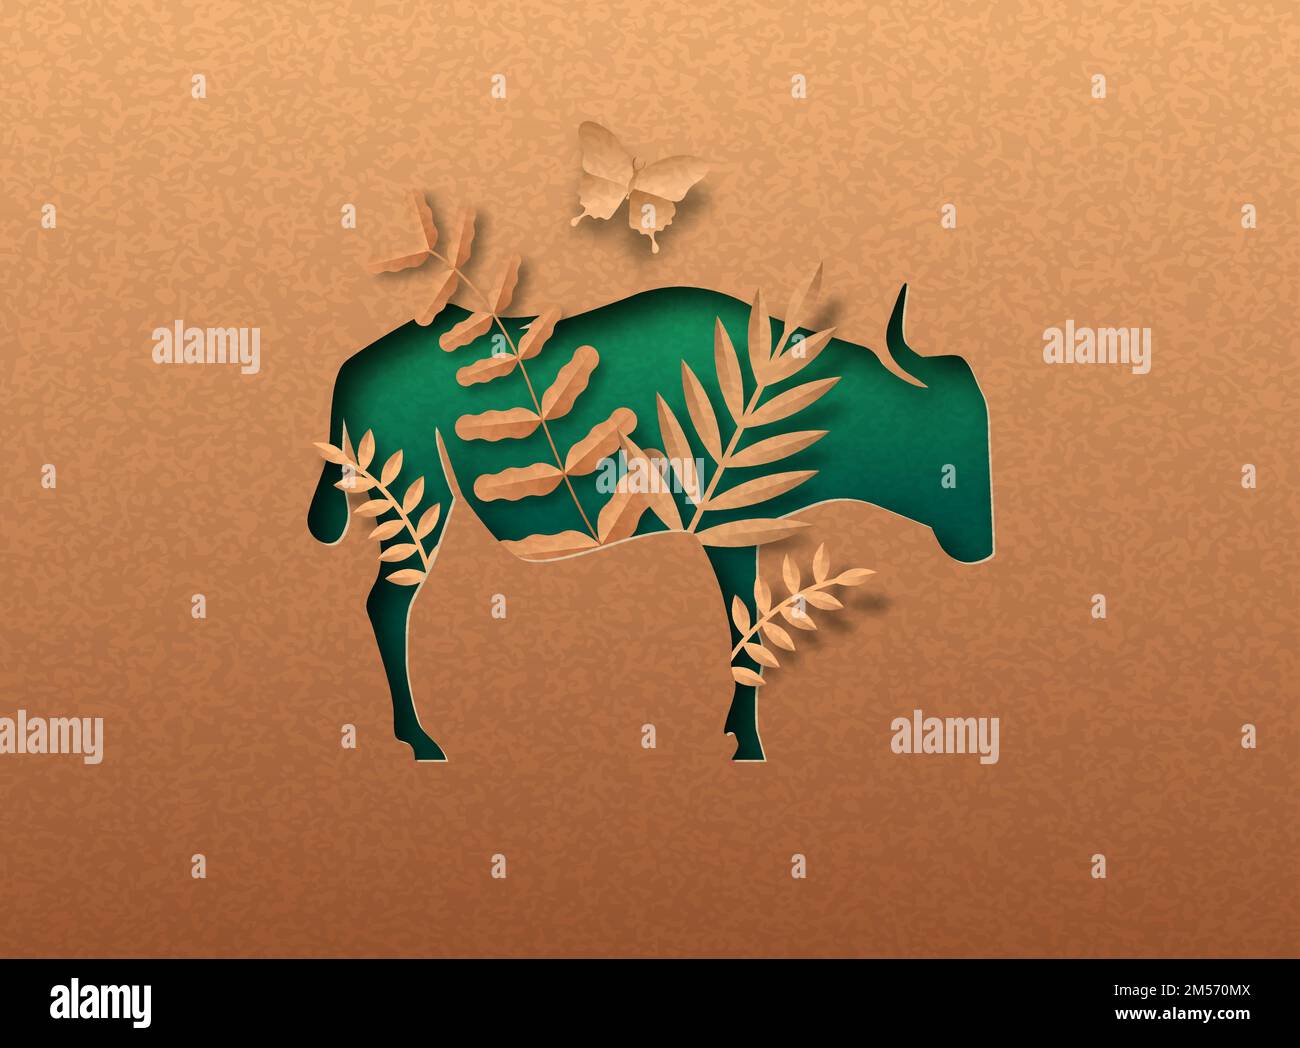 Grün wildebeest Tier isoliert papercut Silhouette mit tropischen Pflanzen Blatt innen. Recycling Papier Textur Ausschnitt Konzept für afrika Safari, wildlif Stock Vektor